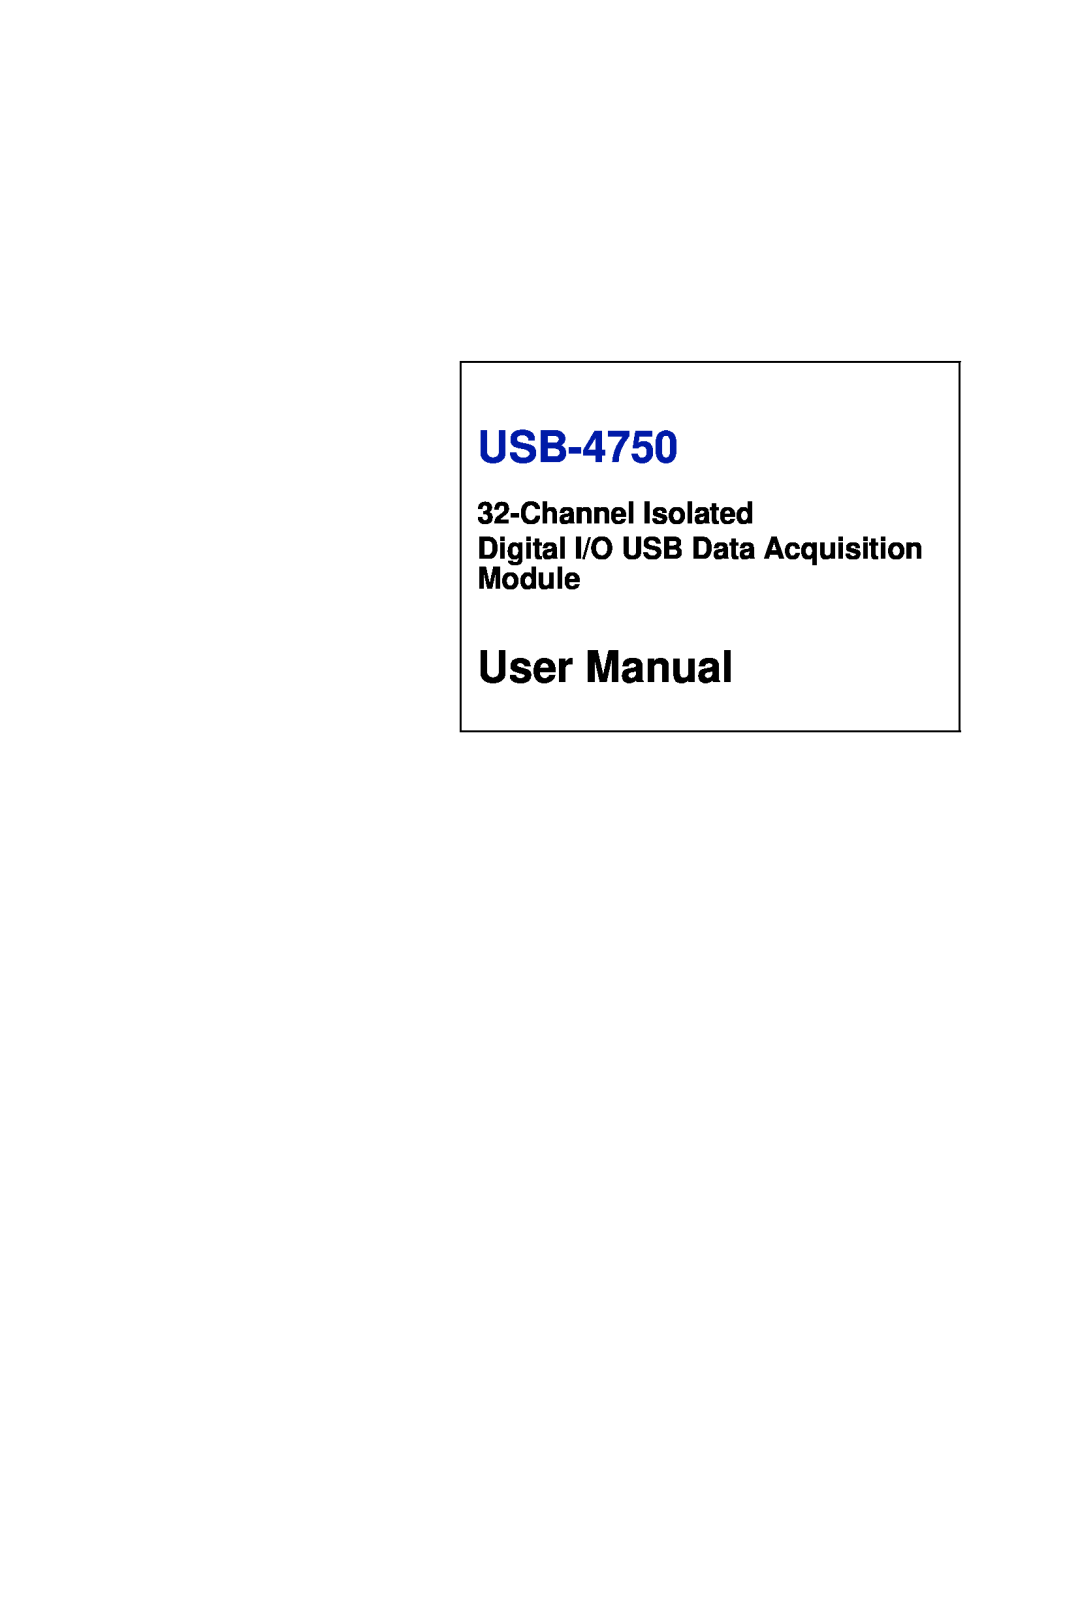 Omega USB-4750 manual User Manual, Channel Isolated Digital I/O USB Data Acquisition Module 